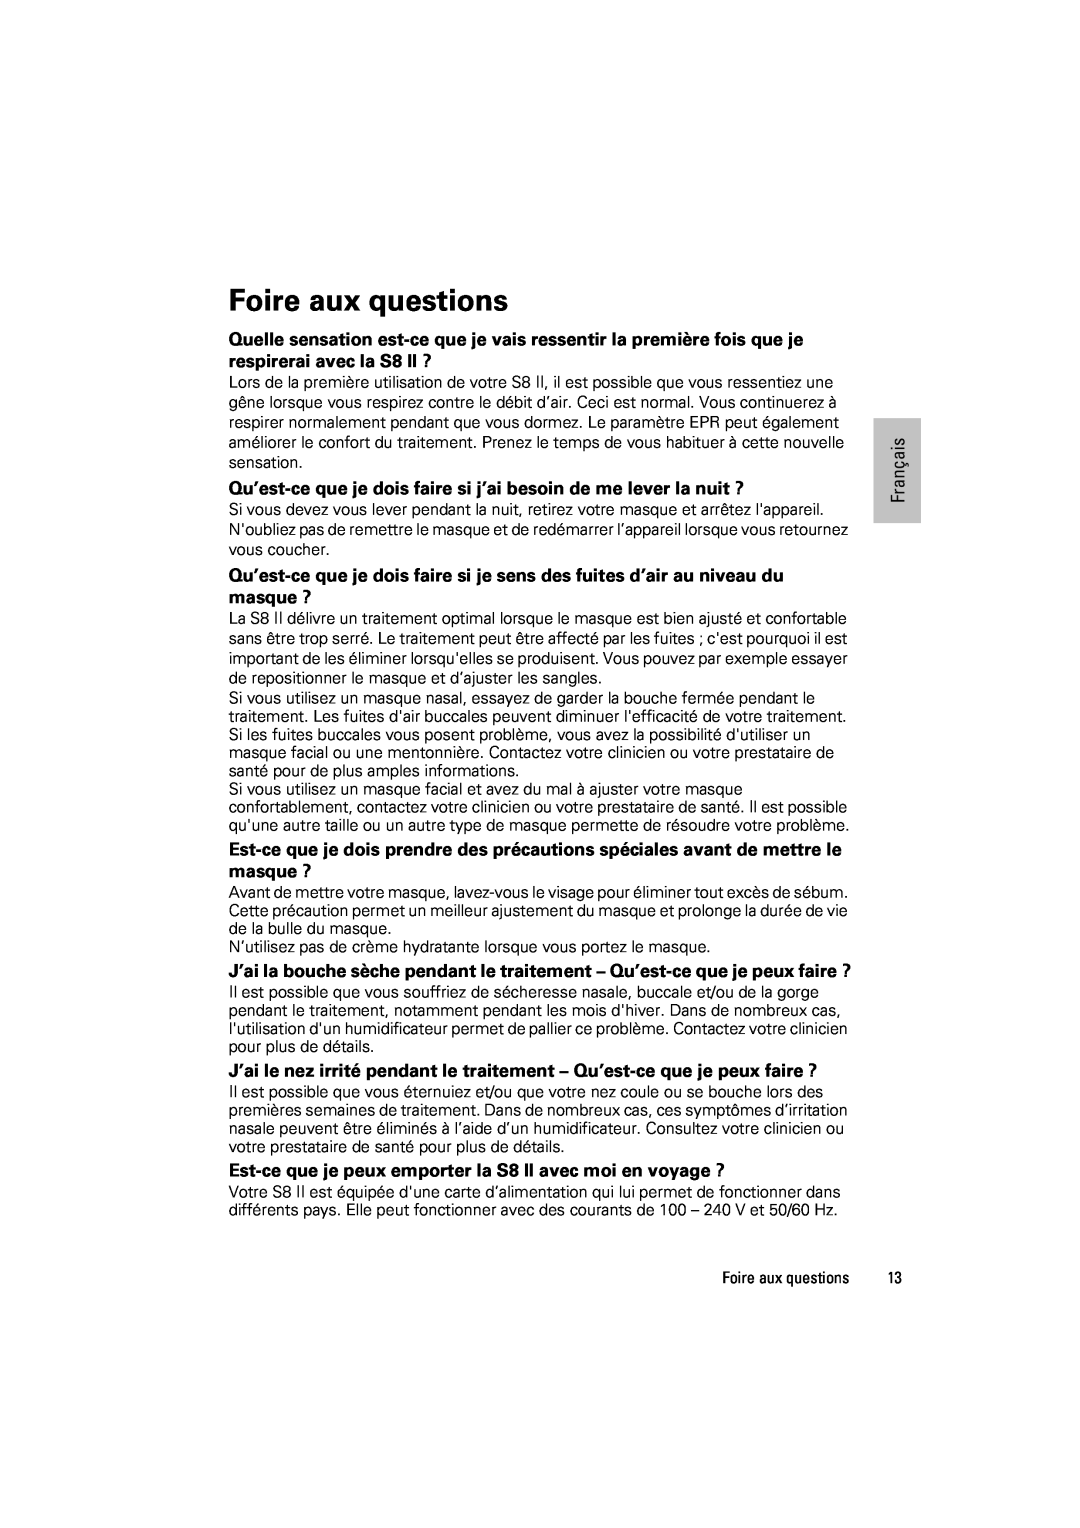 ResMed s8 manual Foire aux questions, Français 